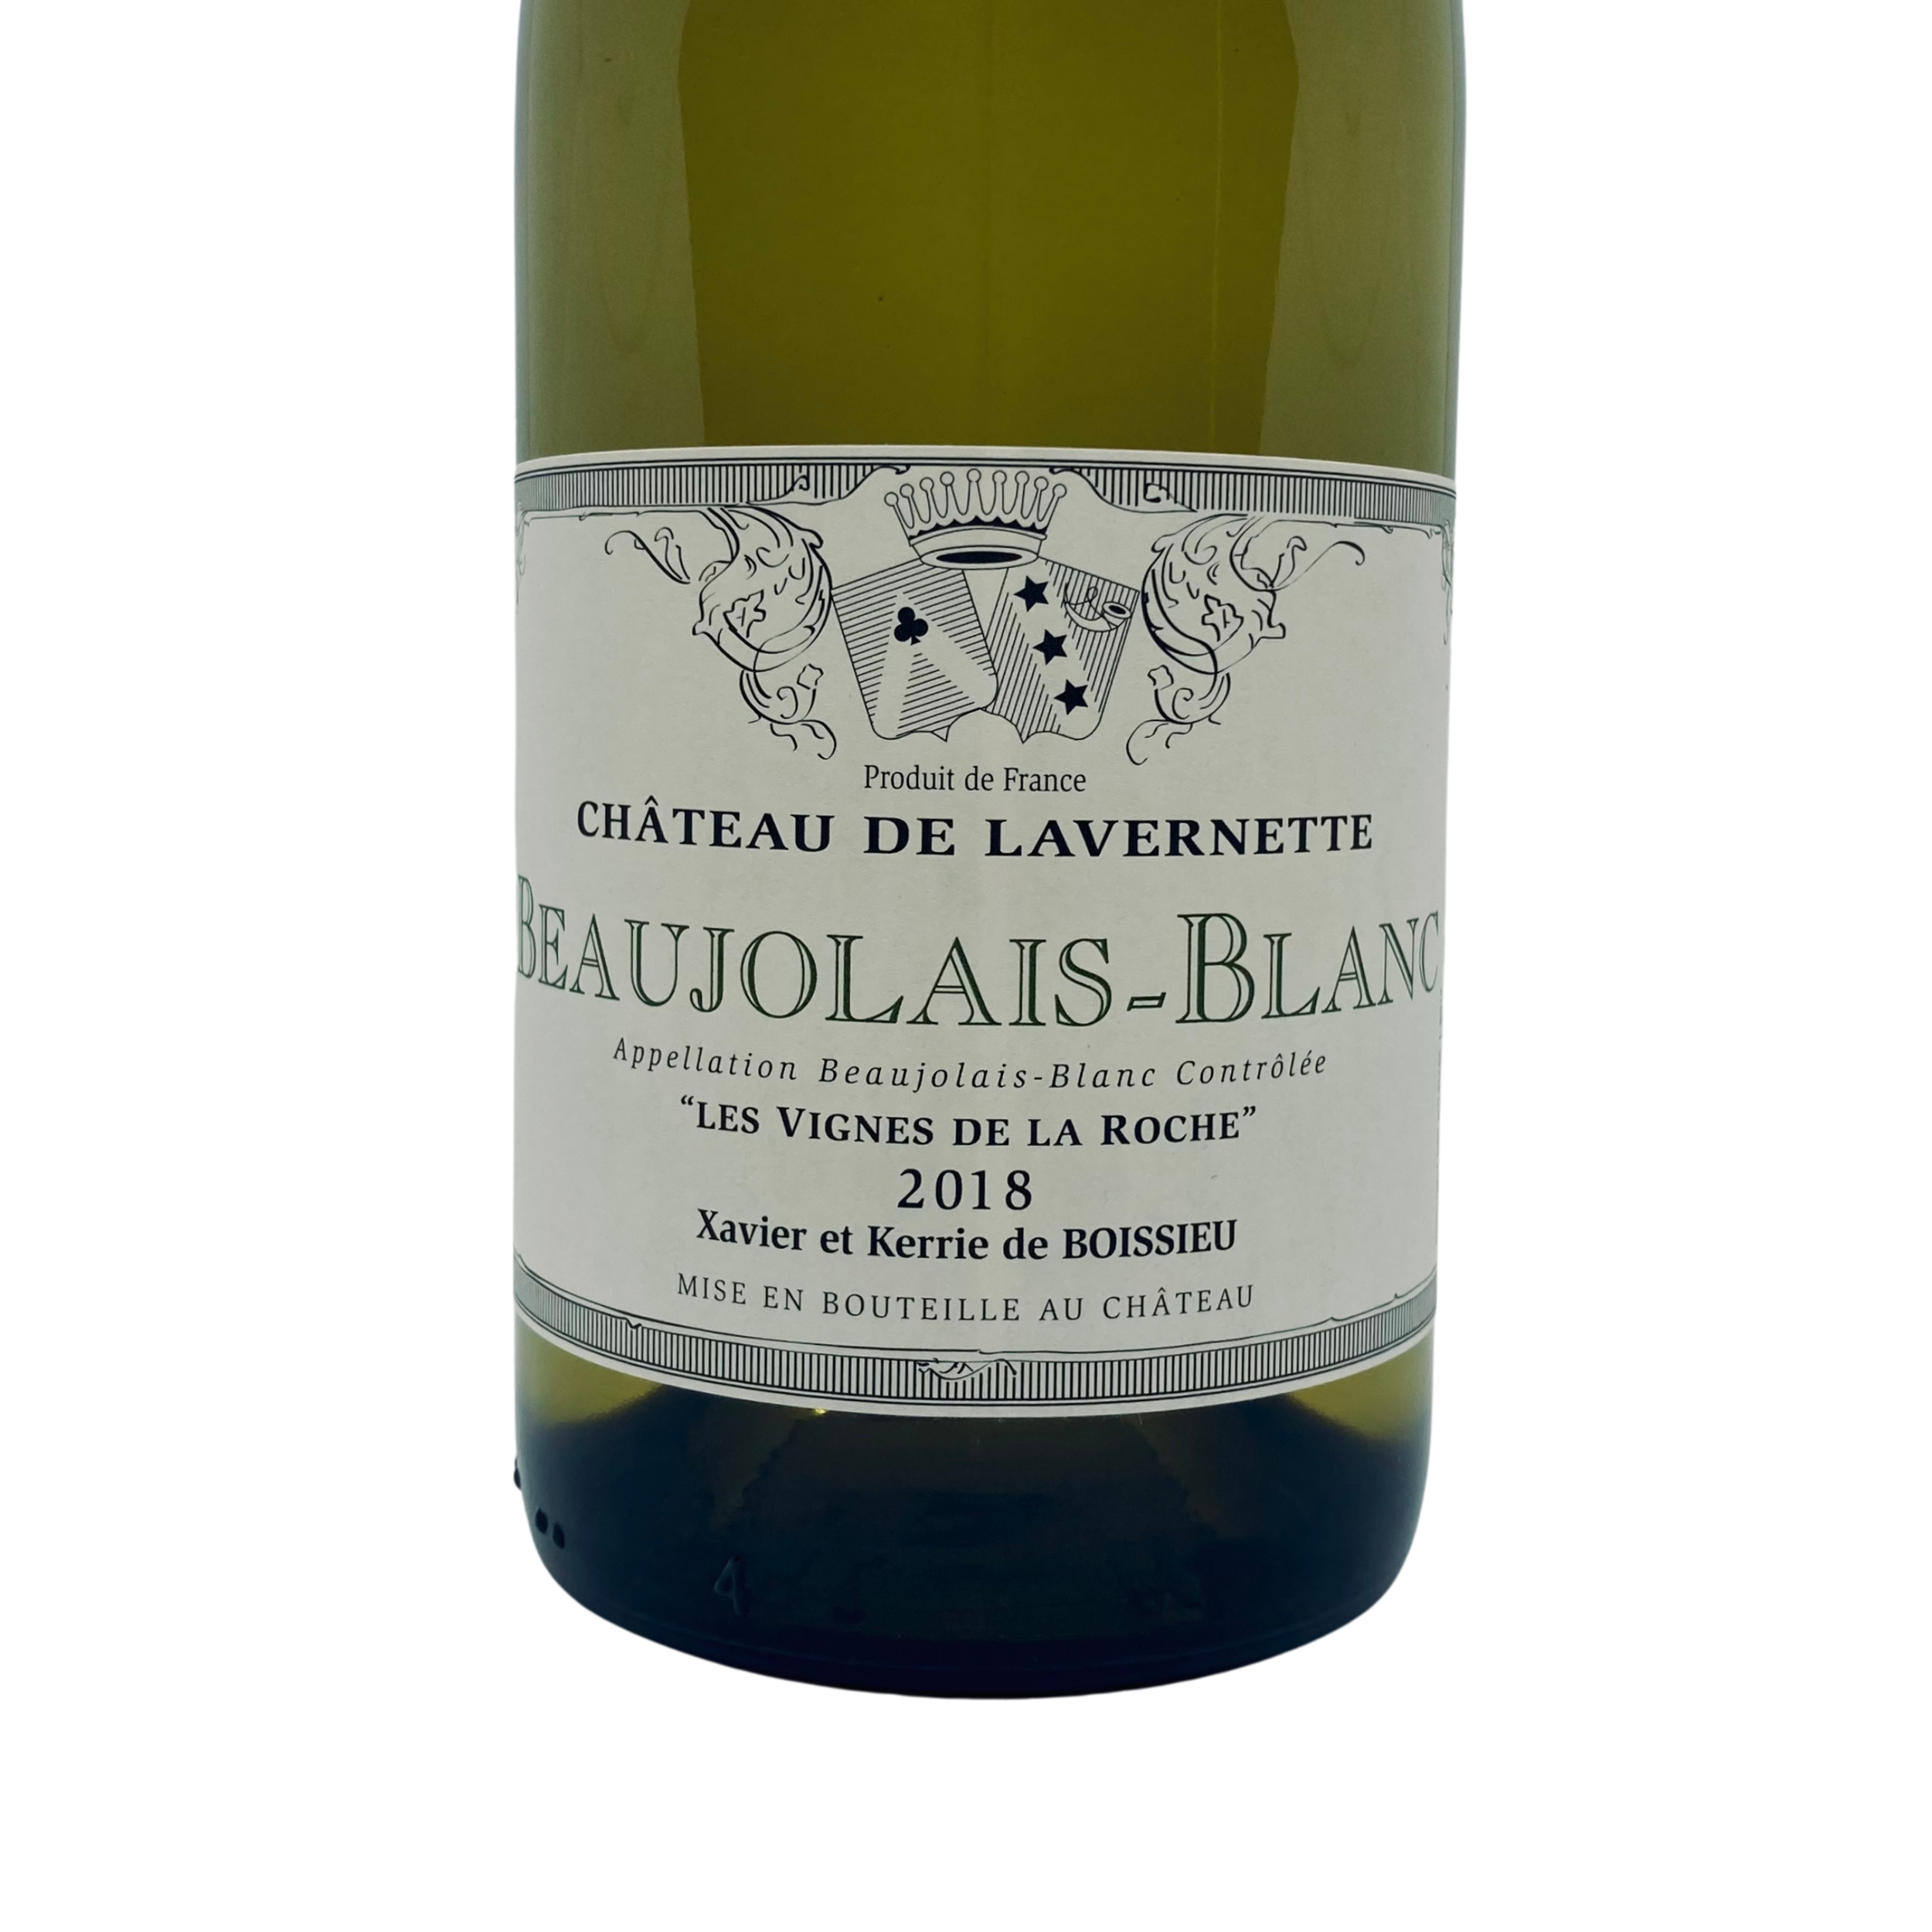 Beaujolais blanc Les Vignes de la Roche 2018